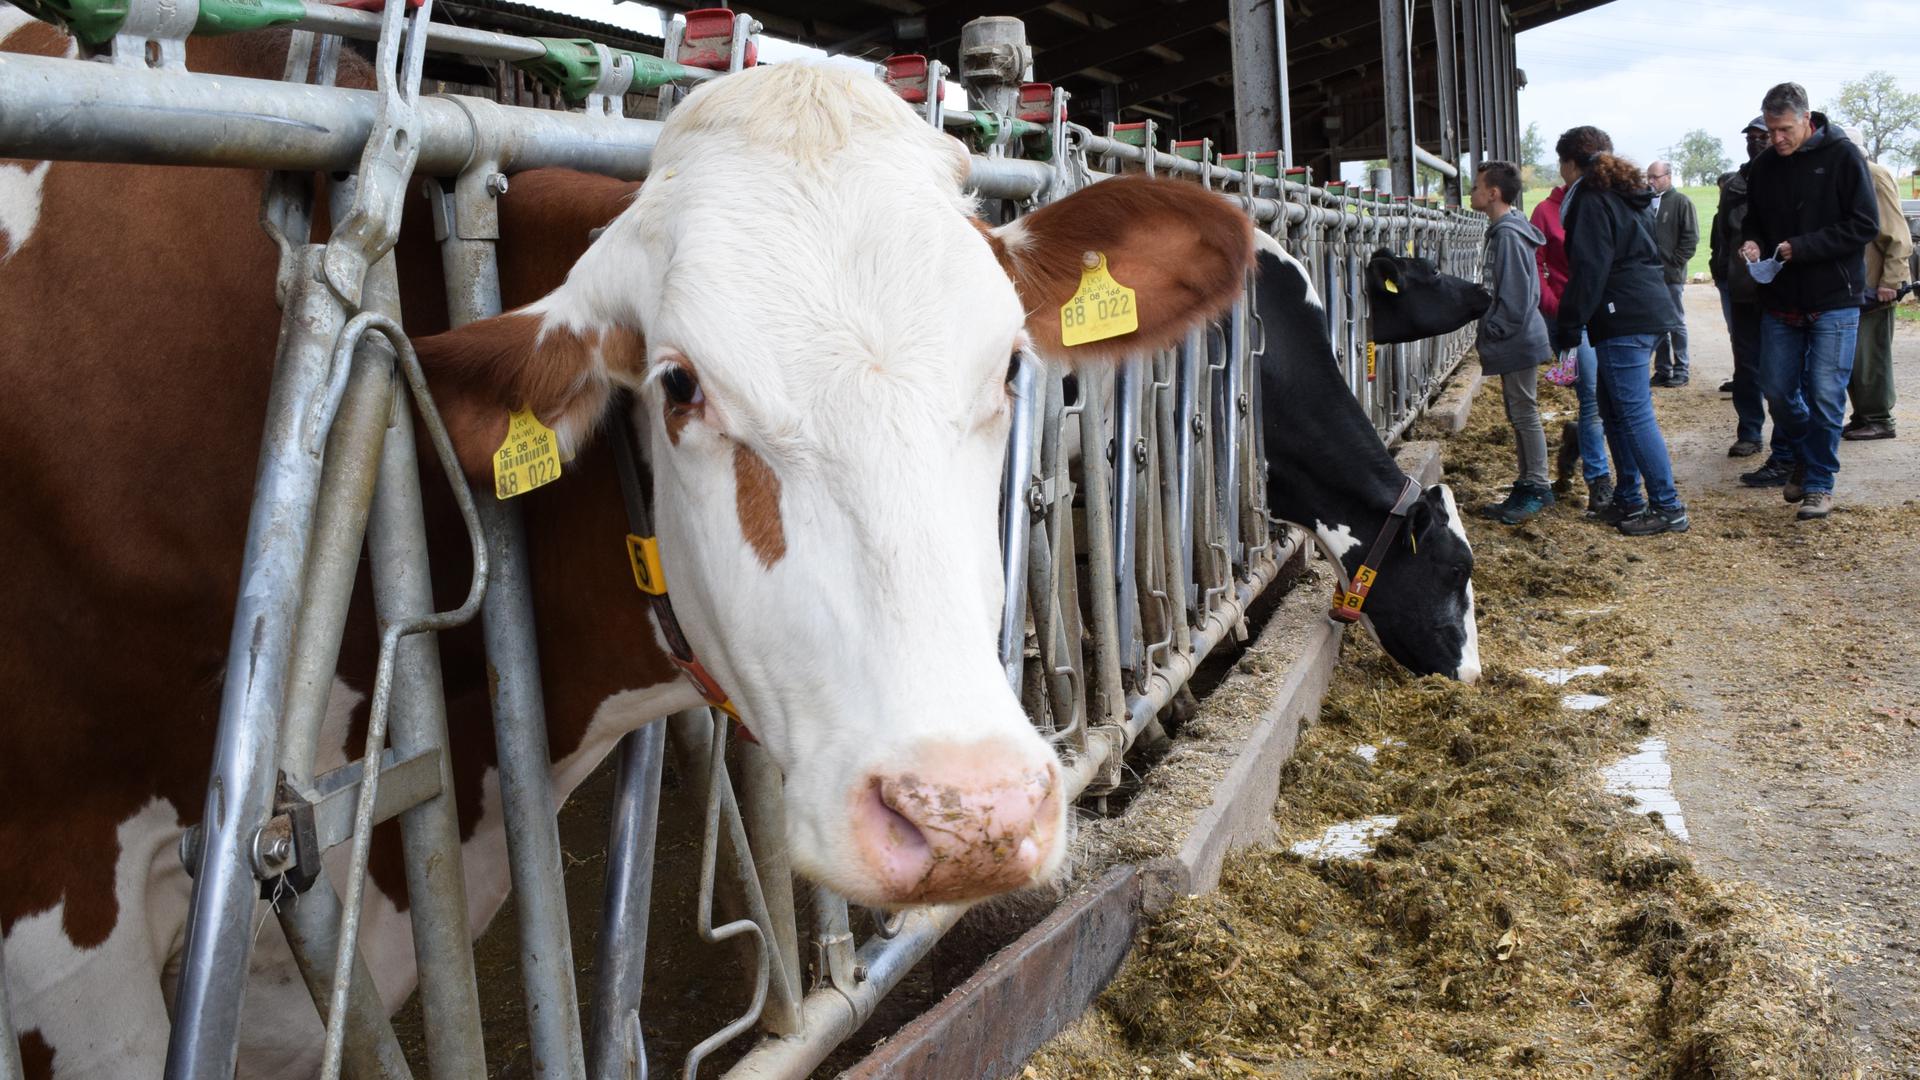 Besuch im Stall: In Langensteinbach hält Milchbauer Knodel 80 Kühe. Im Rahmen der Aktion“Gläserne Produktion“ konnten Interessierte sich den Hof anschauen.